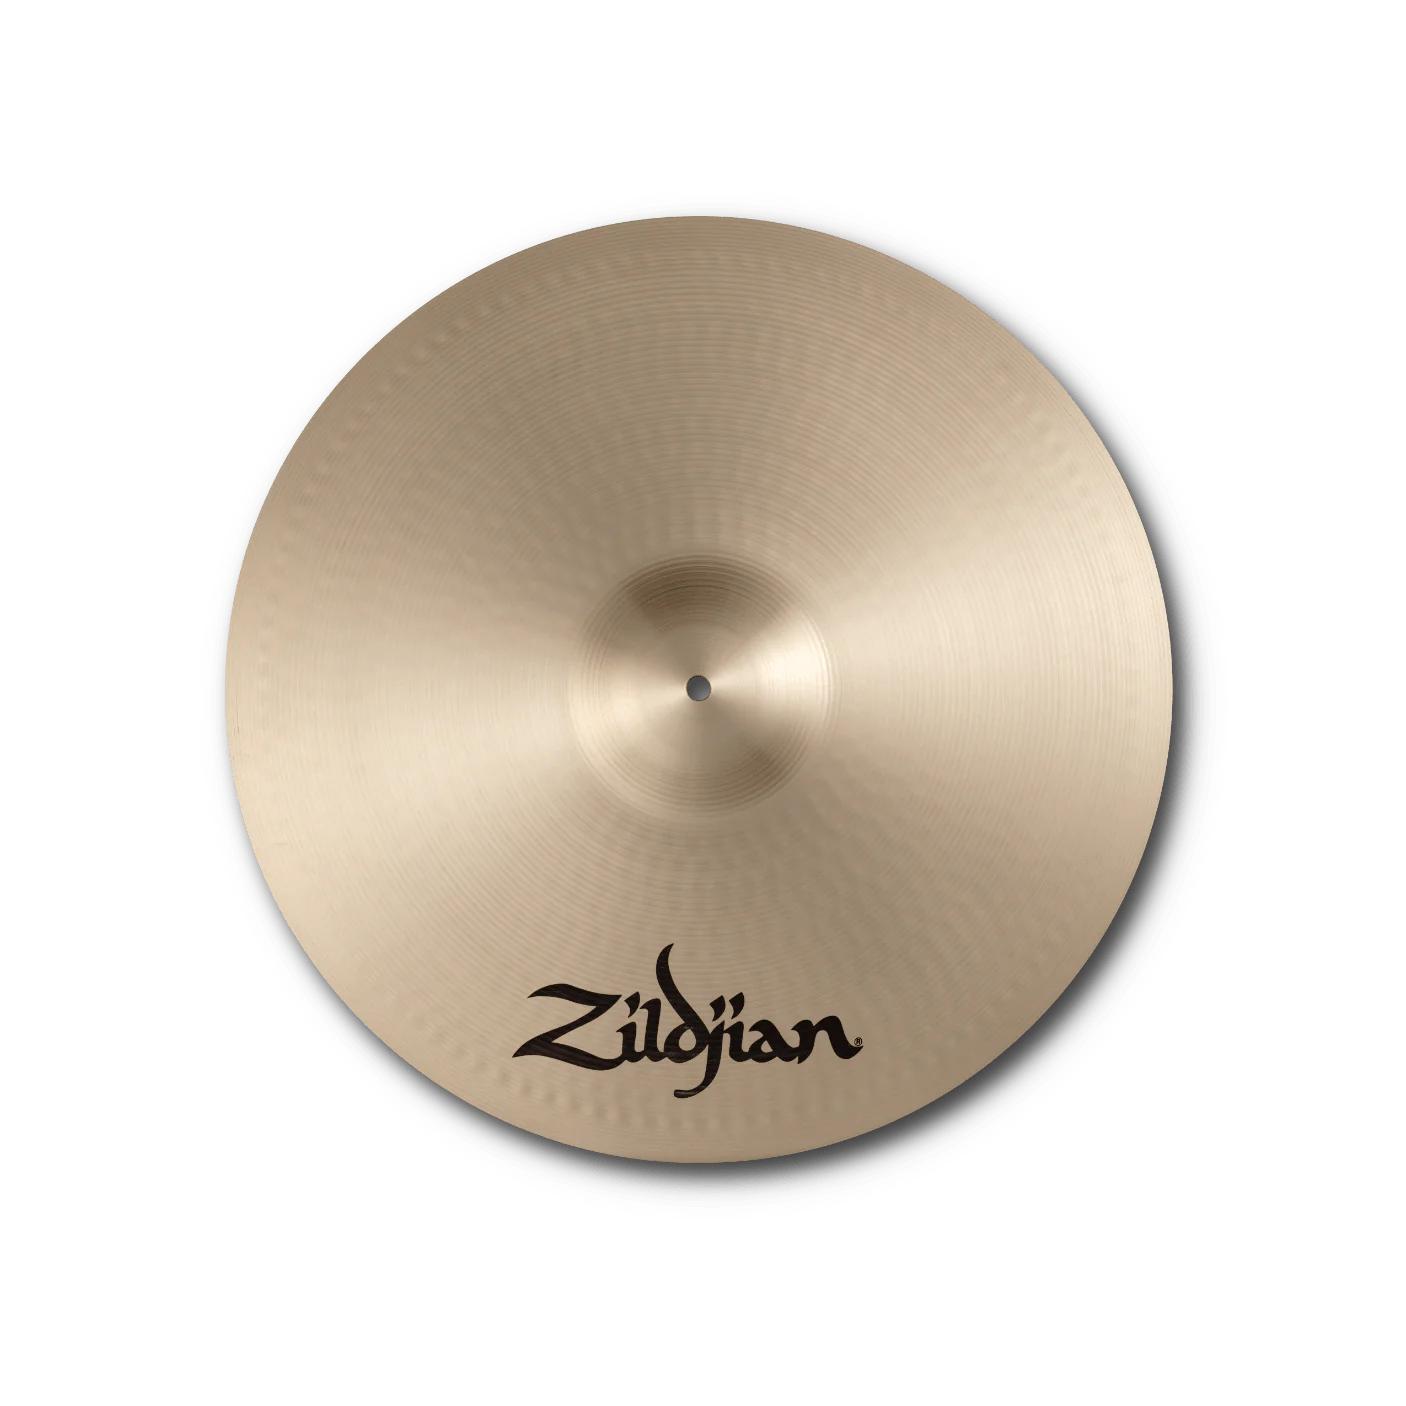 Cymbal Zildjian A Family - A Zildjian Medium Thin Crashes - A0234 - Việt Music